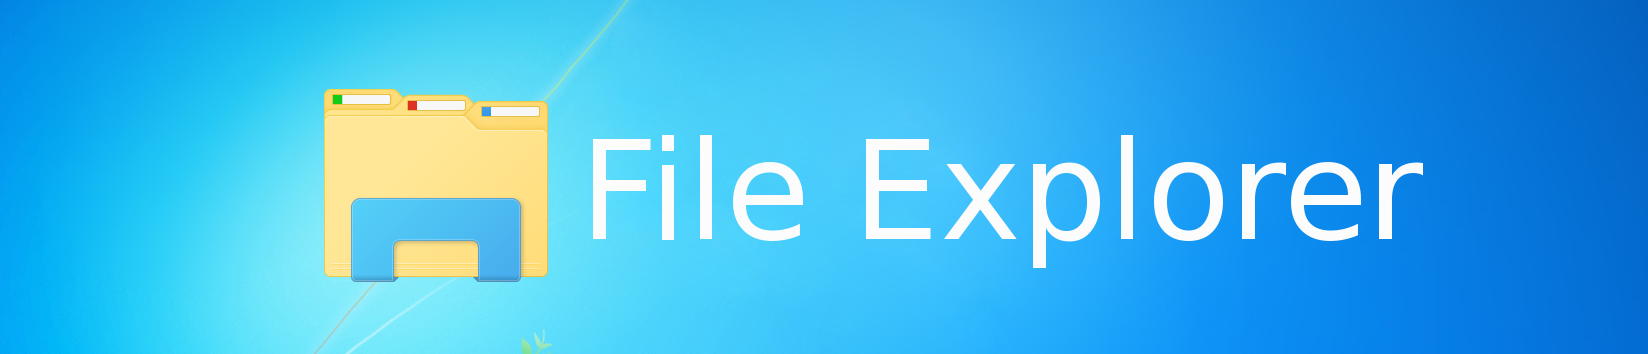 File Explorer logo banner